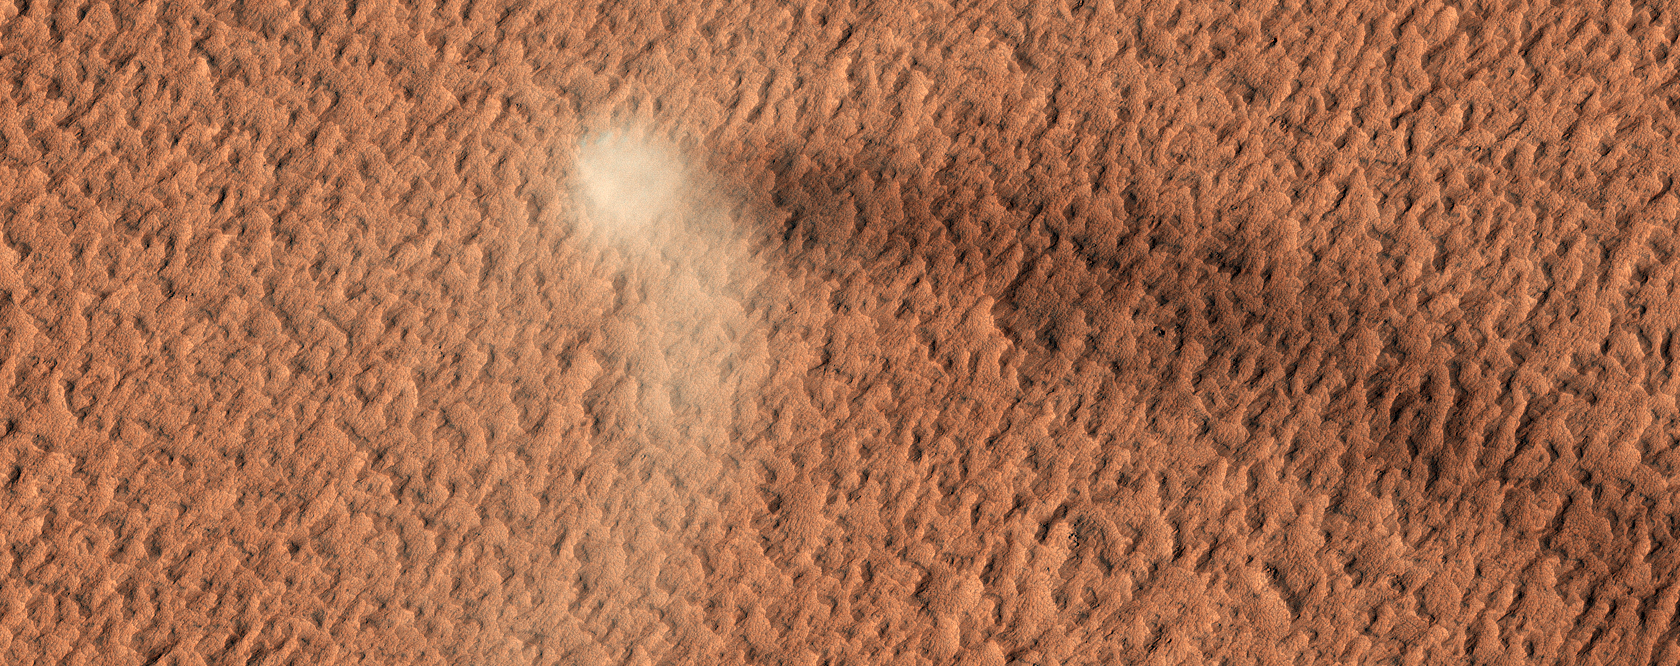 Burza piaskowa na planecie Mars